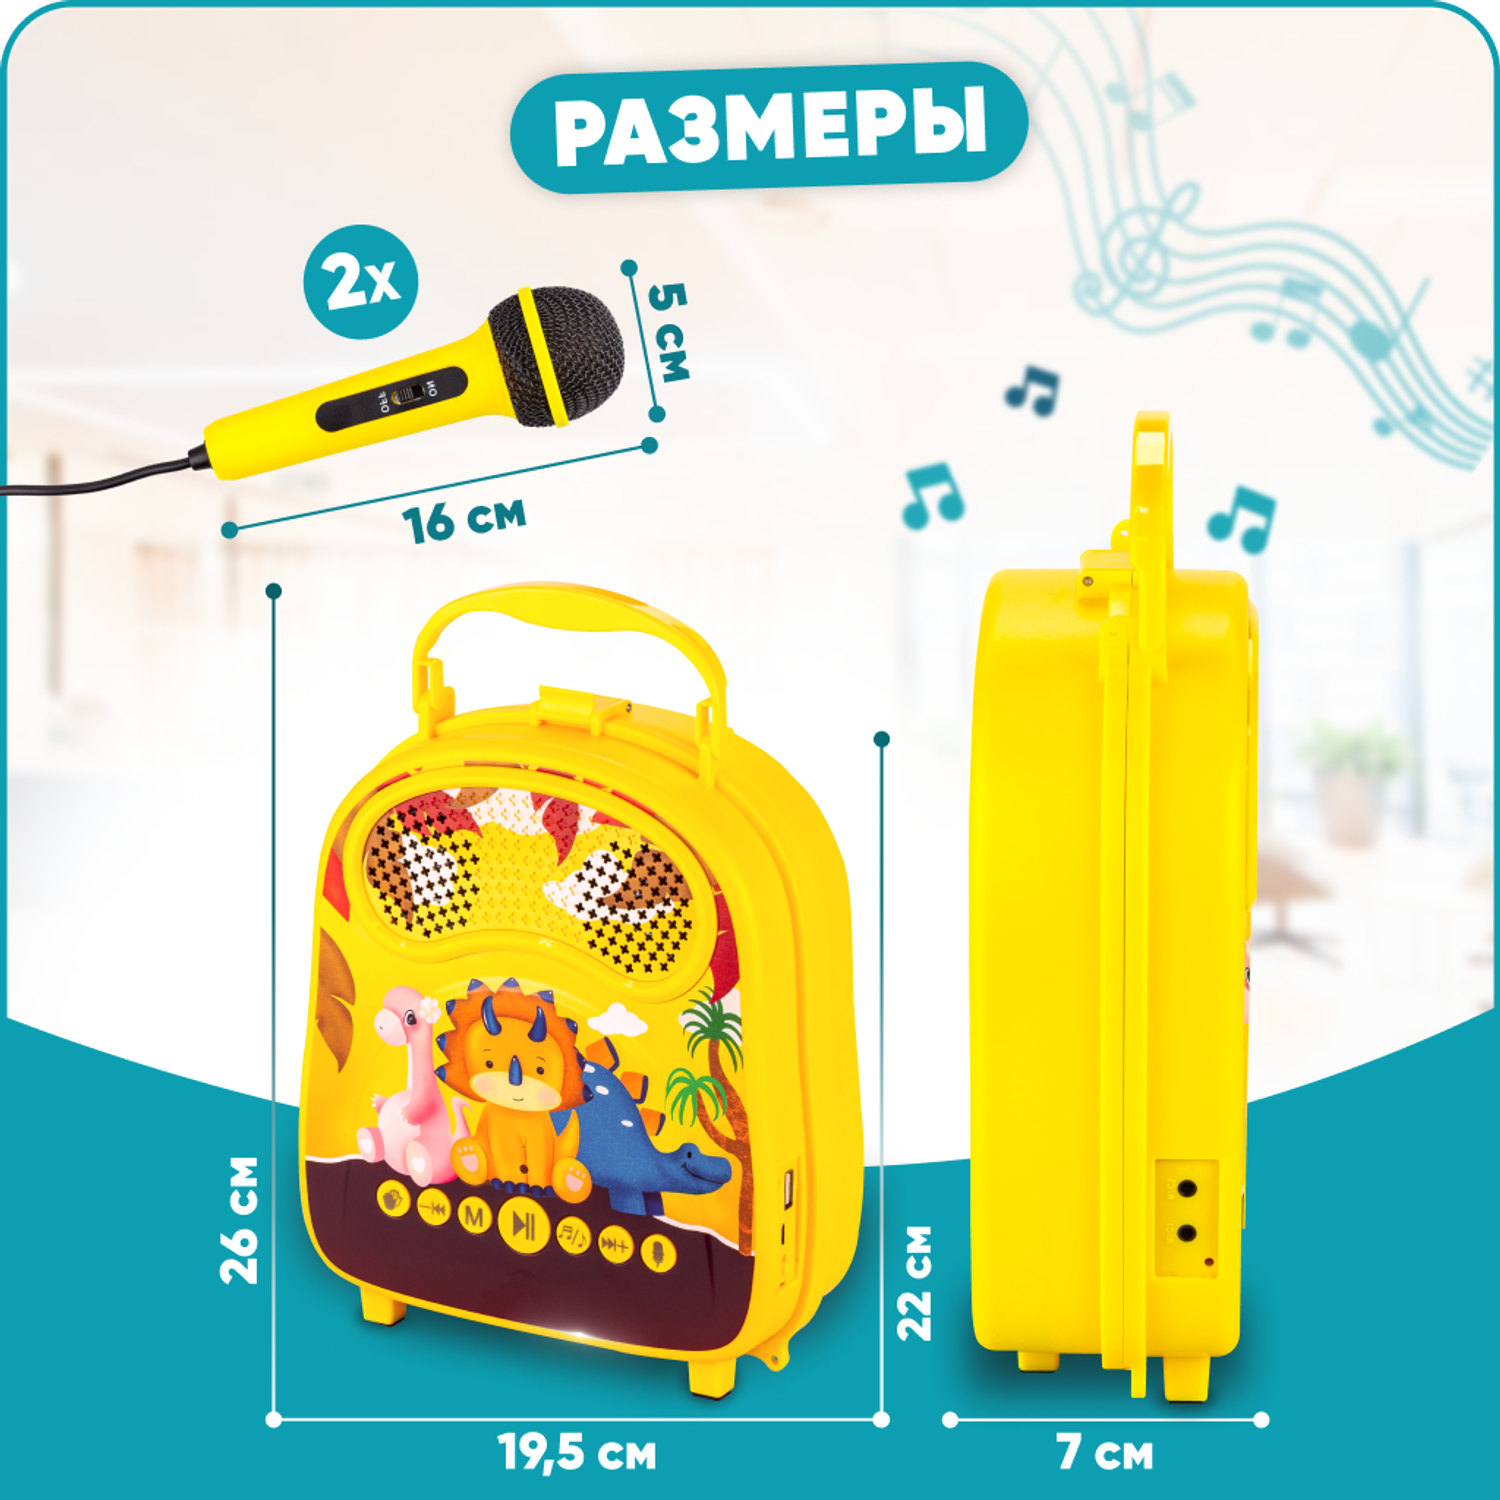 Караоке-рюкзачок для детей Solmax с микрофоном и колонкой Bluetooth желтый - фото 6